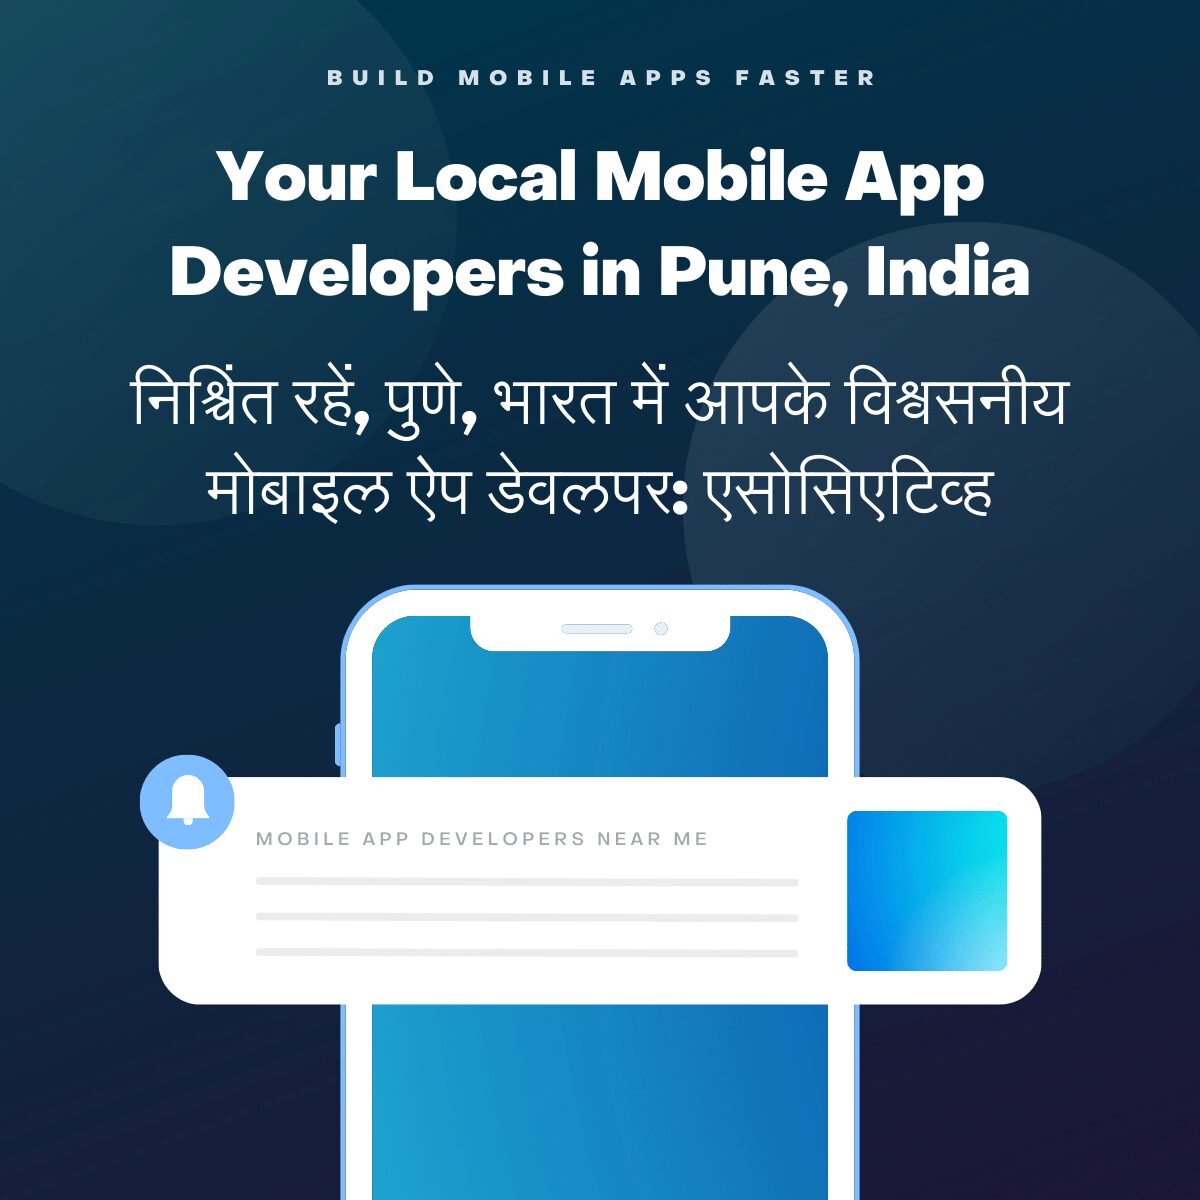 Your Local Mobile App Developers in Pune, India निश्चिंत रहें, पुणे, भारत में आपके विश्वसनीय मोबाइल ऐप डेवलपर: एसोसिएटिव्ह